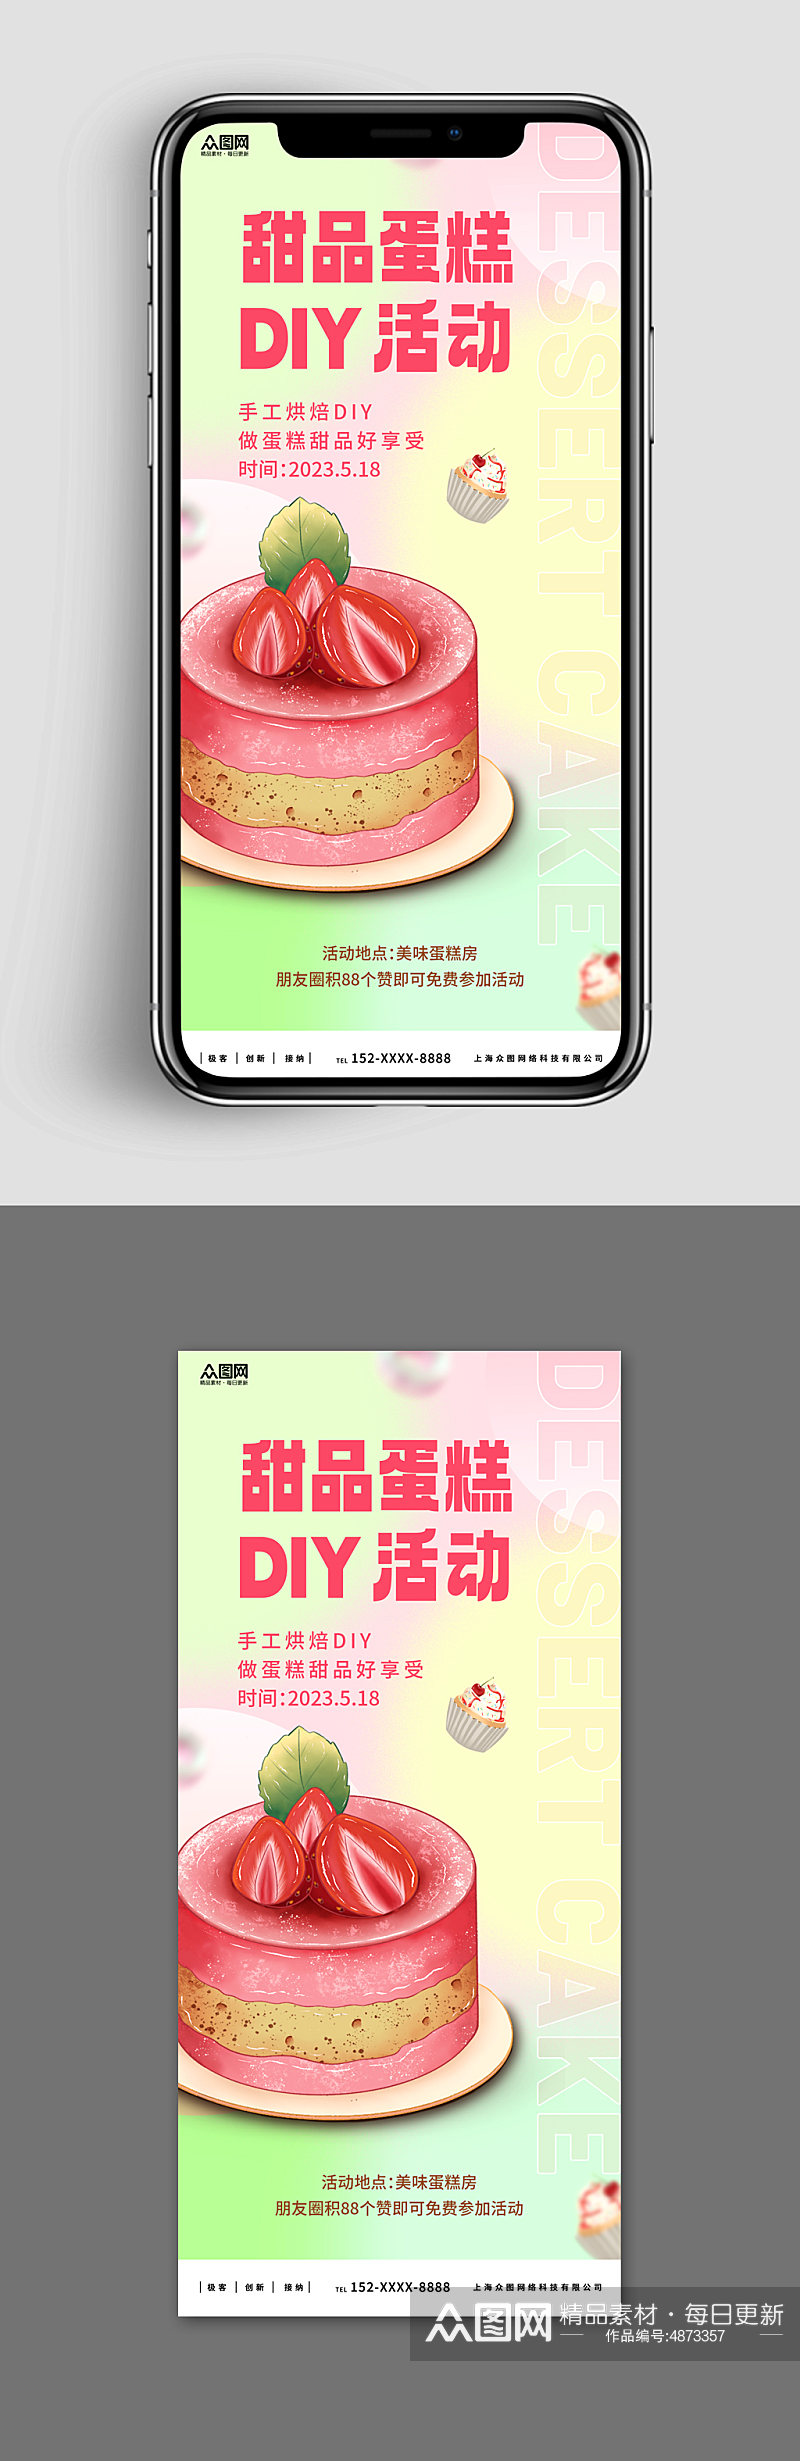 新媒体手机海报甜品蛋糕DIY活动宣传海报素材